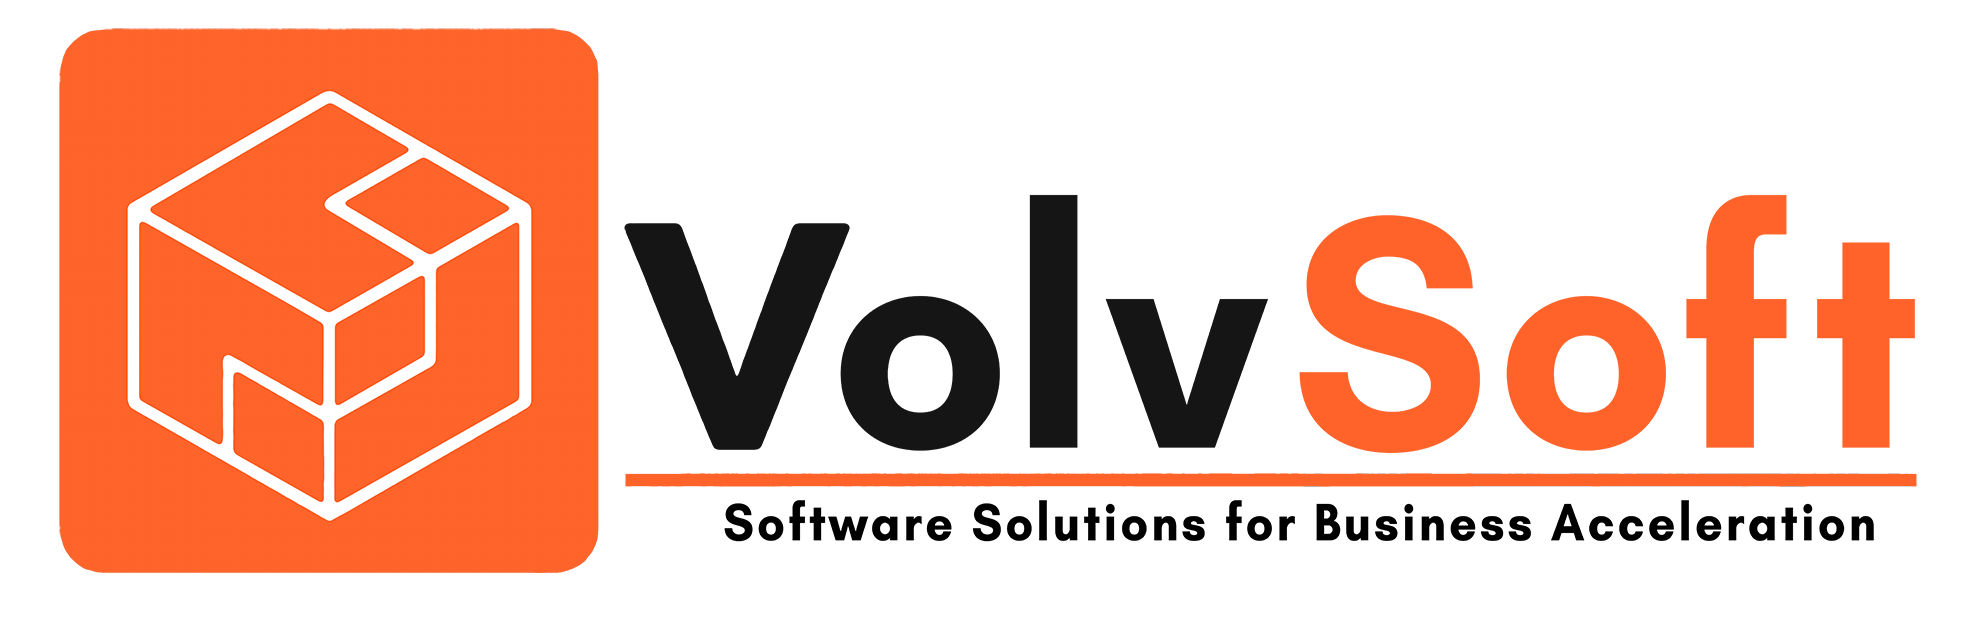 Volvsoft-logo